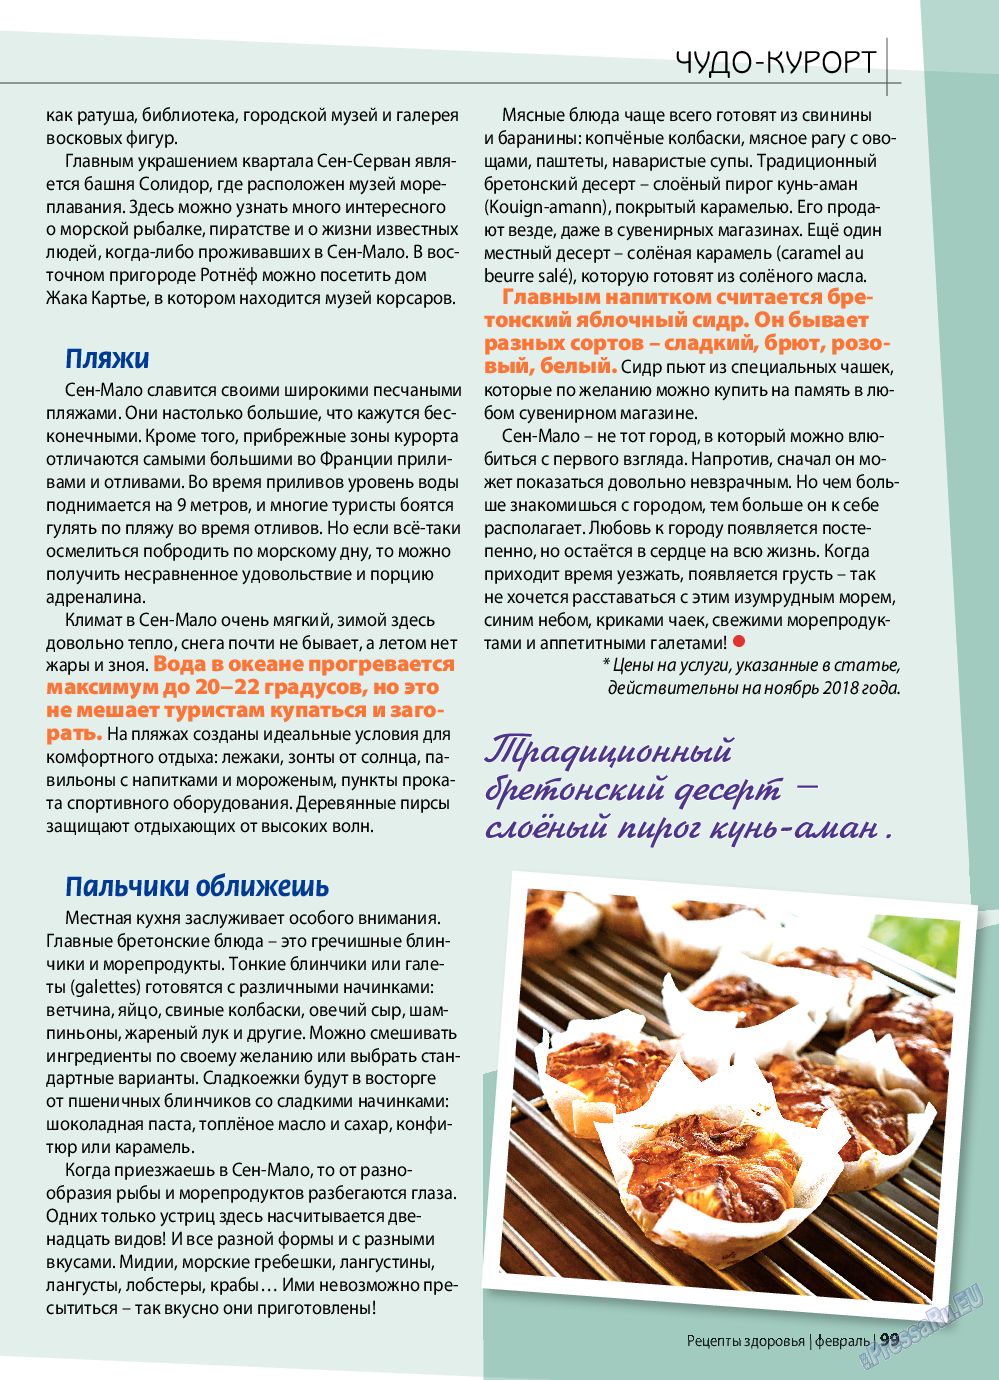 Рецепты здоровья, журнал. 2019 №117 стр.99